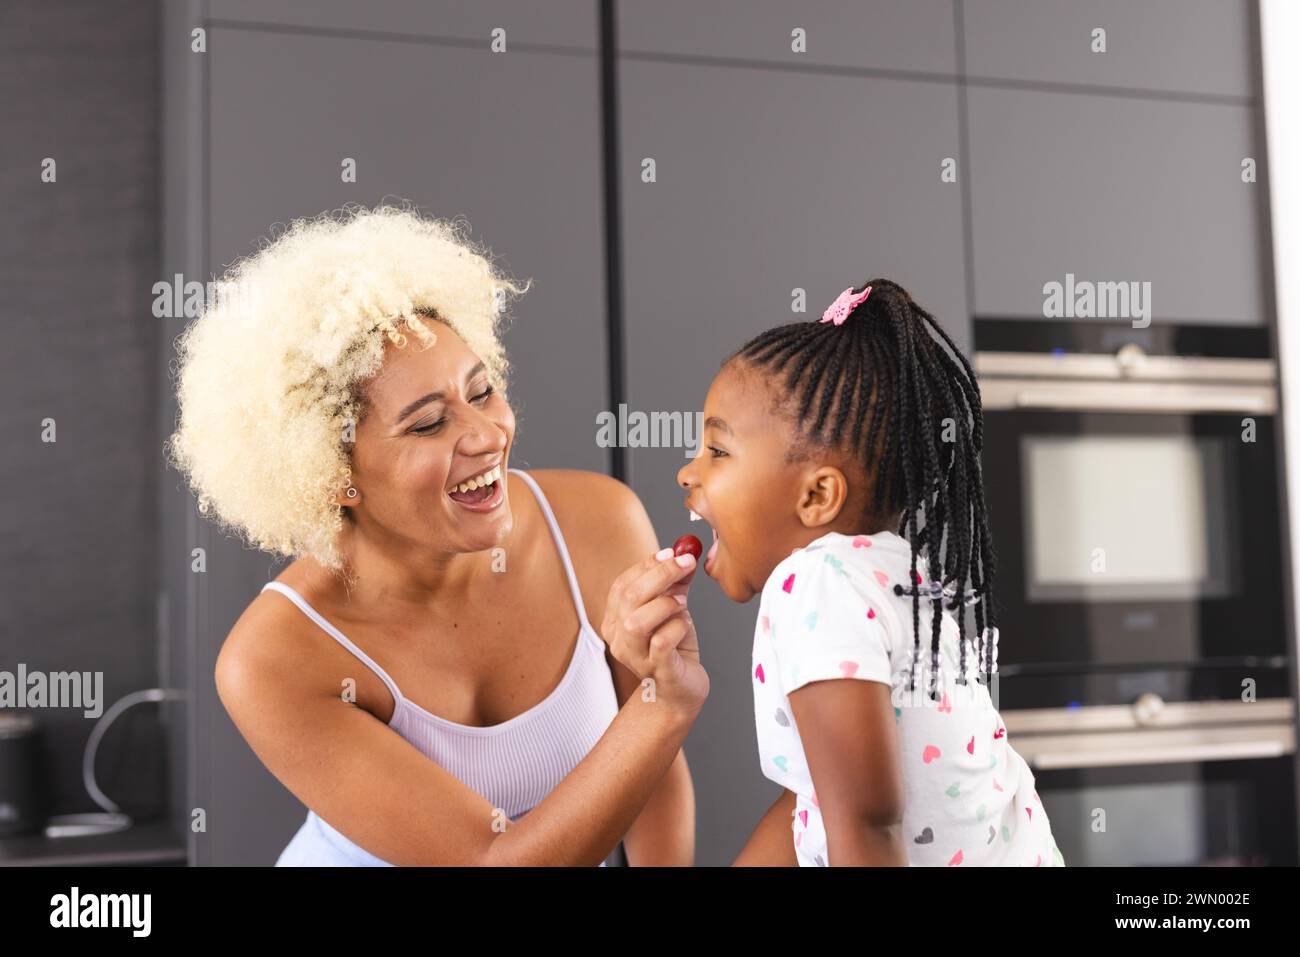 Junge birassische Mutter mit blonden lockigen Haaren lacht mit einer afroamerikanischen Tochter in einer Küche Stockfoto